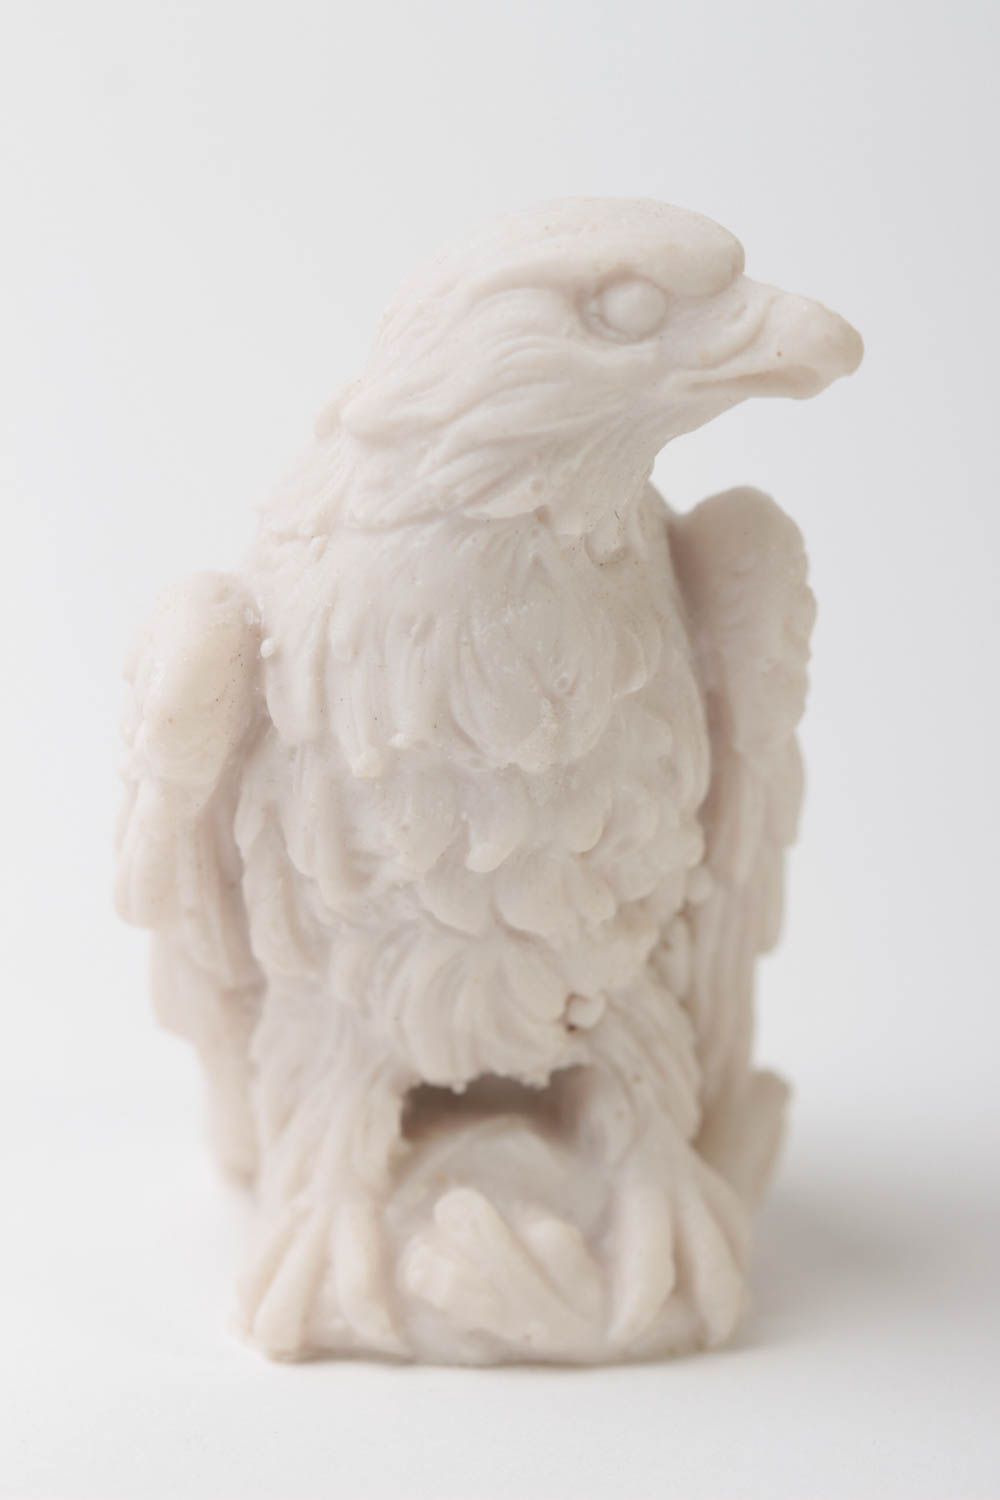 Handmade Adler Figur kleine Dekofigur Haus Dekoration Rohling zum Bemalen foto 2